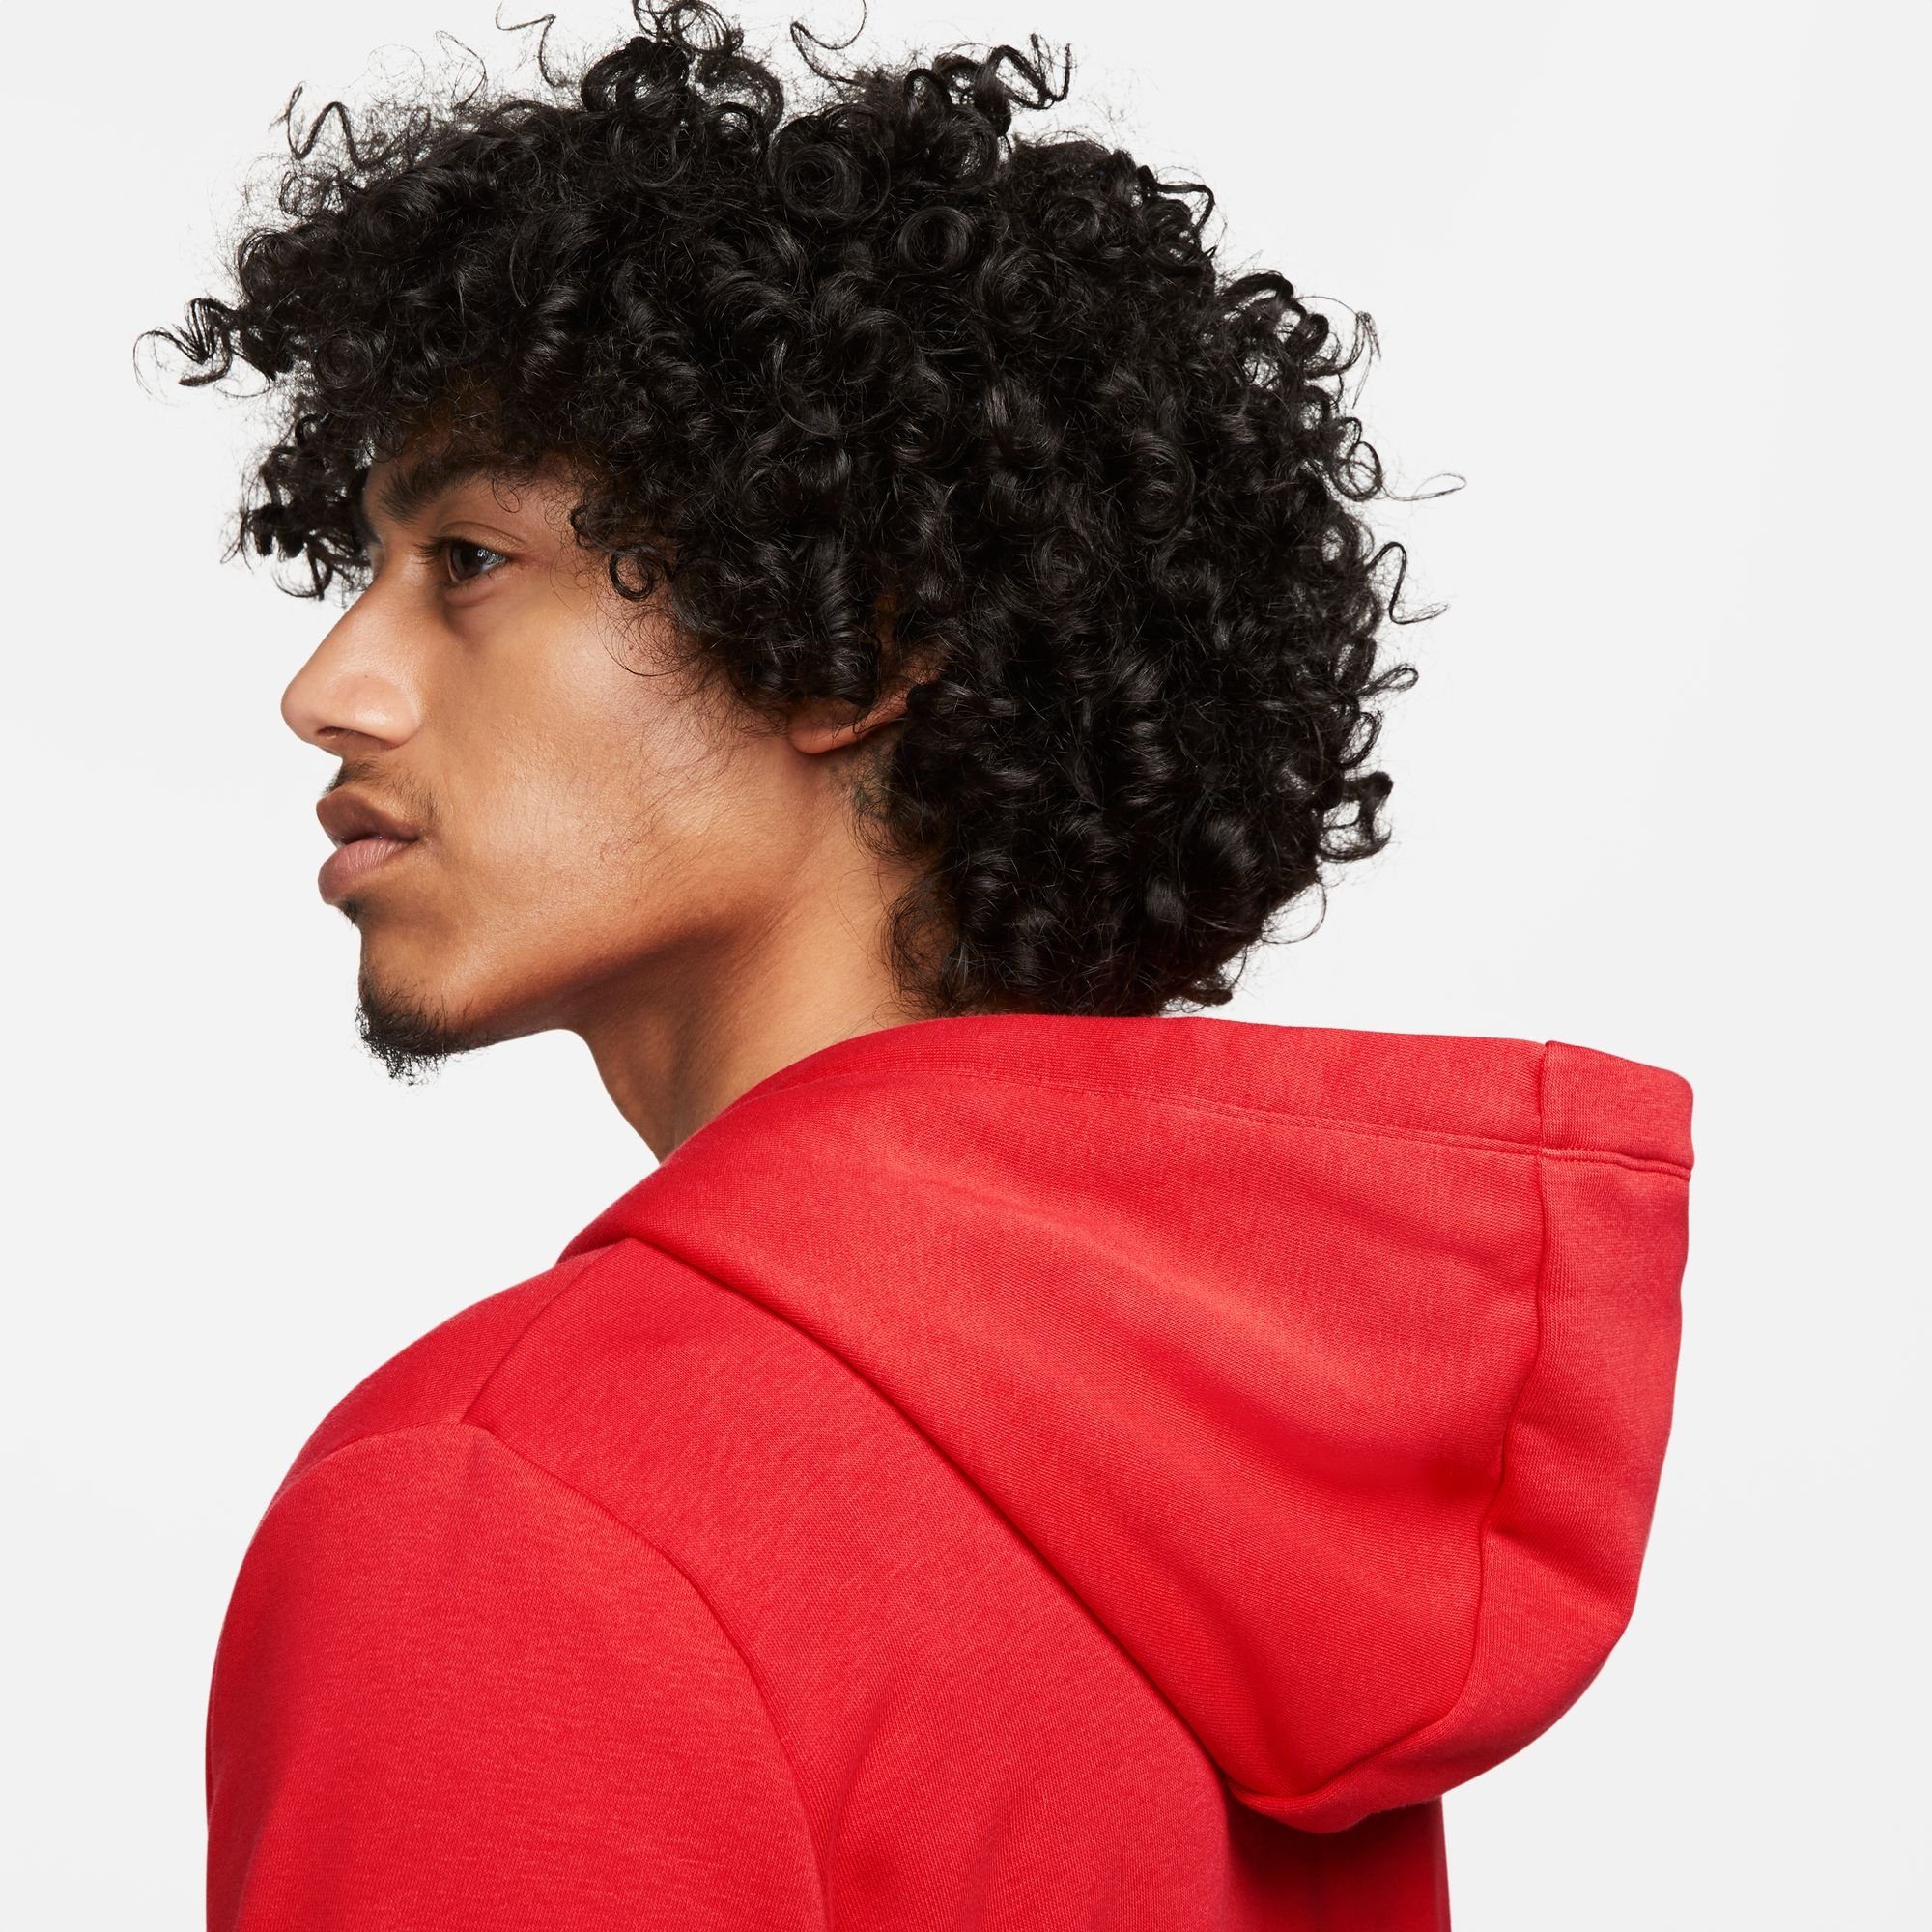 RED/WHITE Fleece Club Hoodie Nike Sportswear Full-Zip Kapuzensweatjacke UNIVERSITY Women's